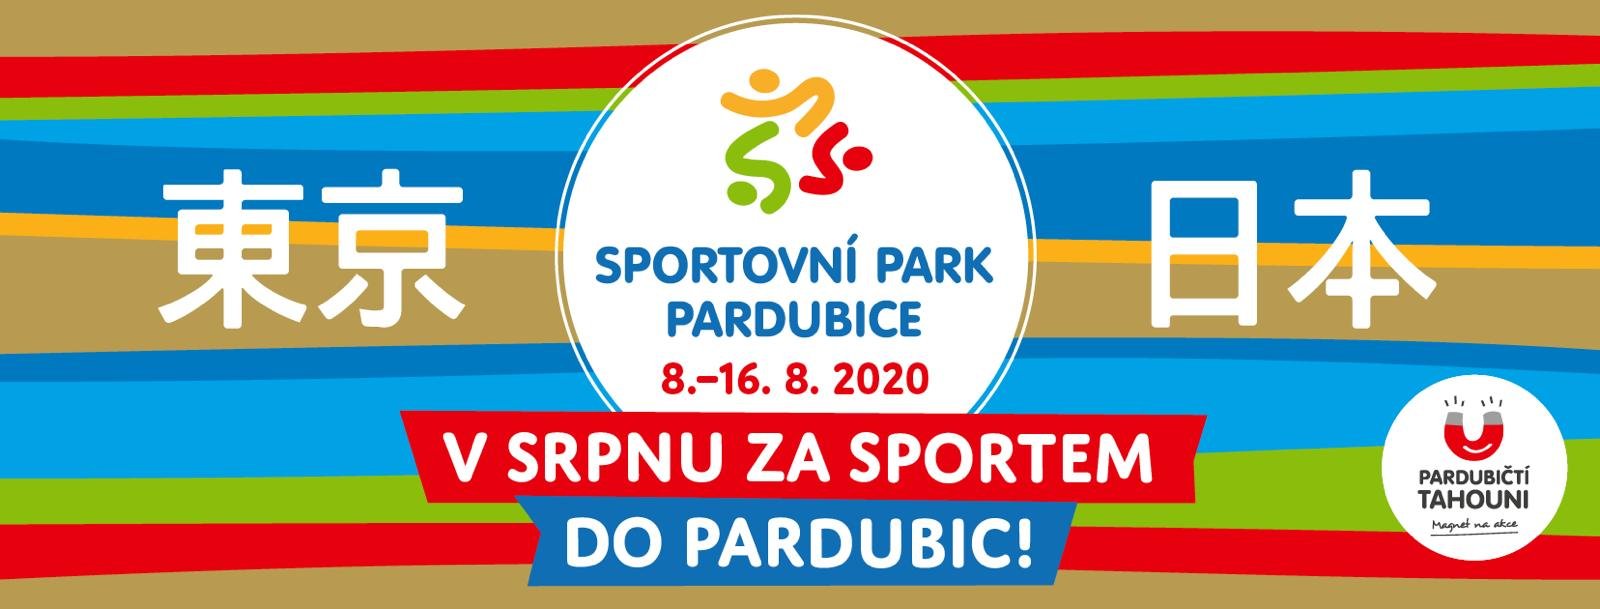 Sportovní park Pardubice 2020